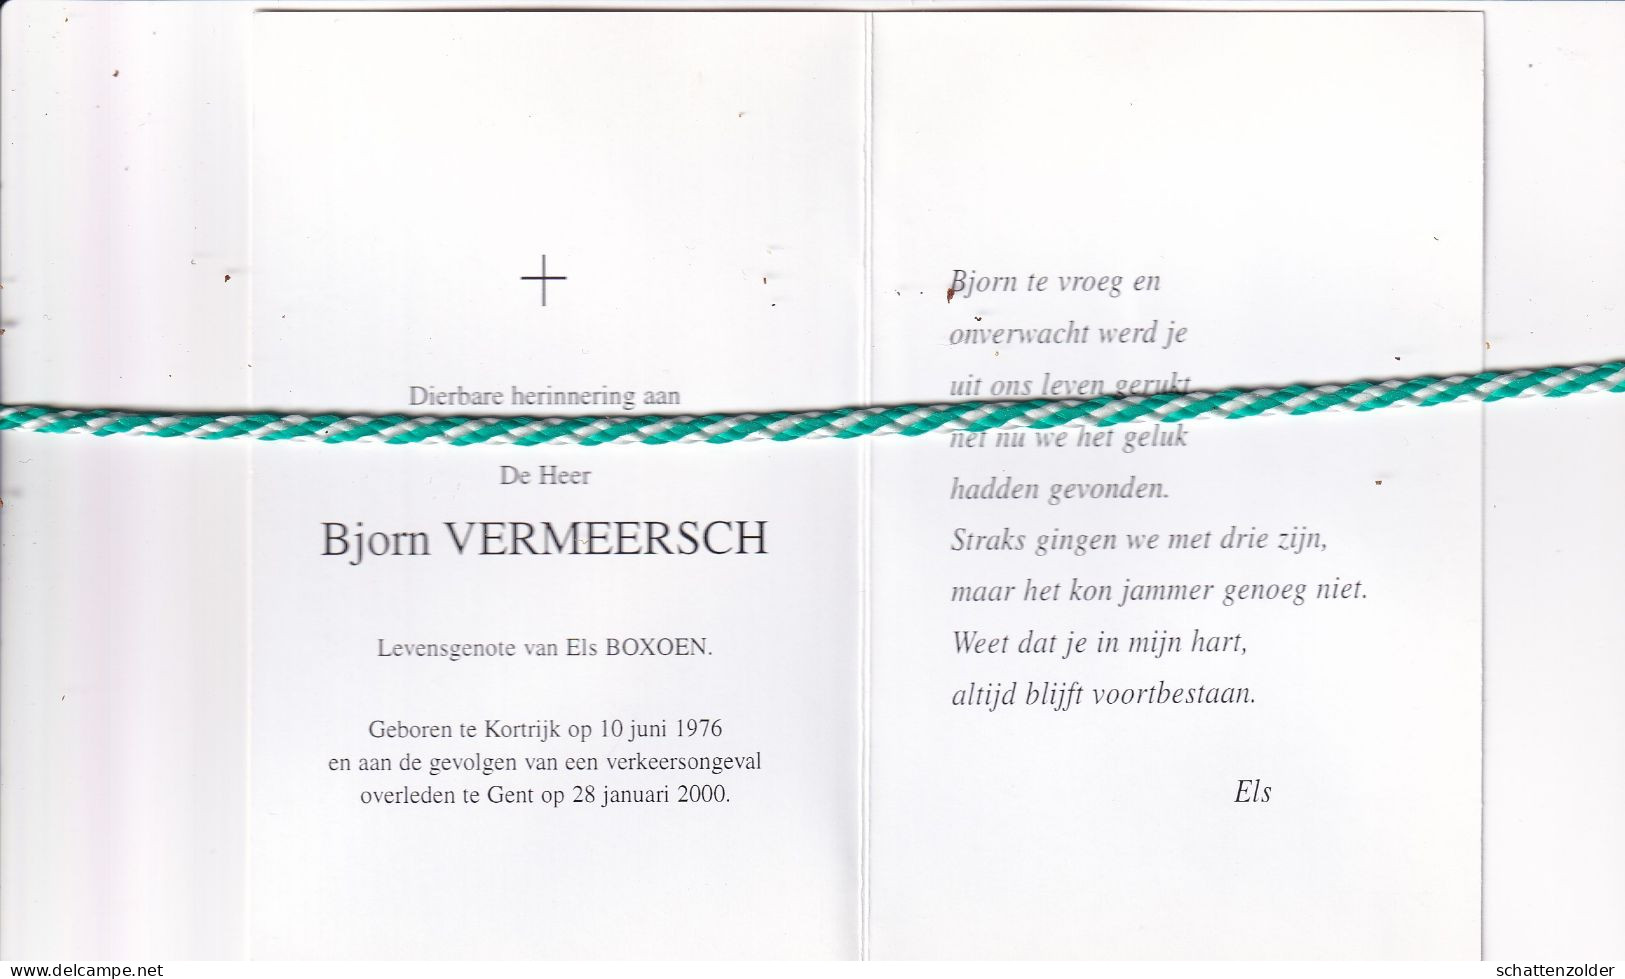 Bjorn Vermeersch-Boxoen, Kortrijk 1976, Gent 2000. Foto - Todesanzeige